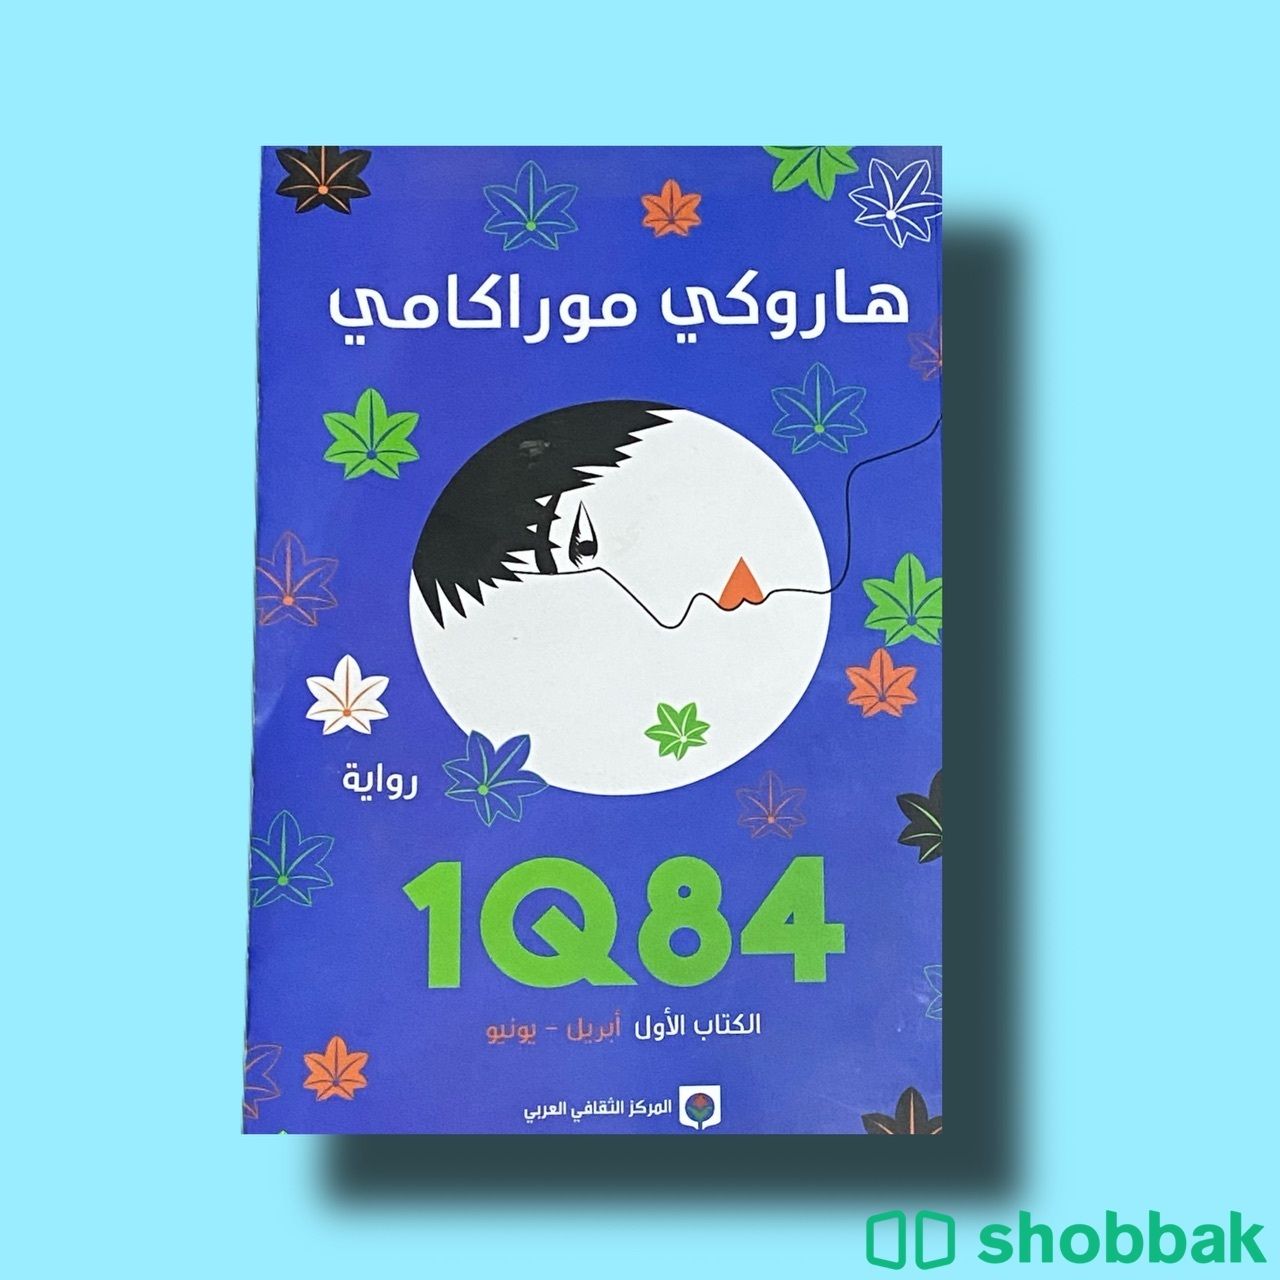 كتب مستعملة مره واحدة أصلية نظيفة Shobbak Saudi Arabia